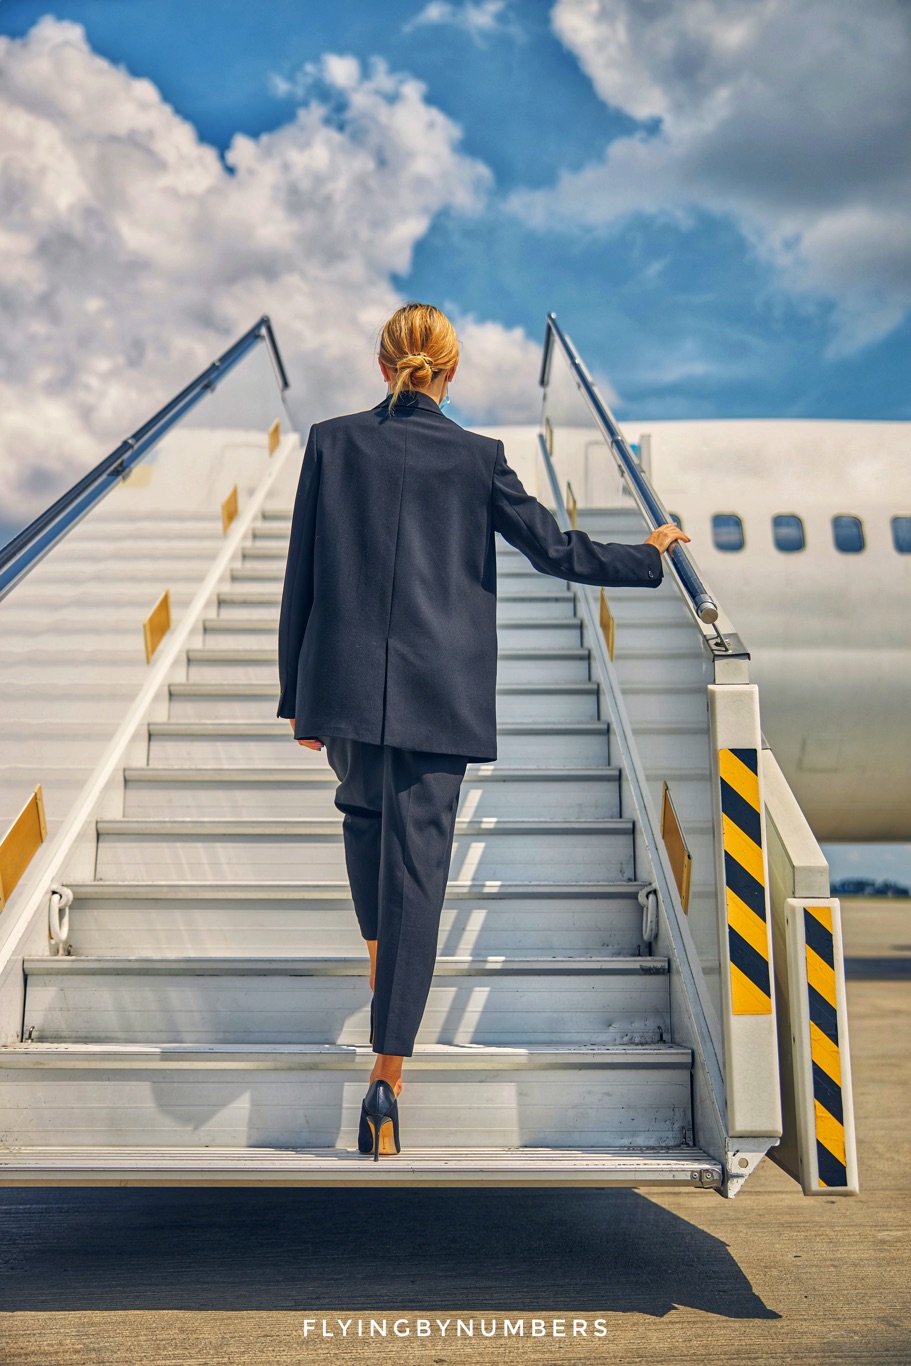 Flight attendant boarding an aircraft wearing high heels